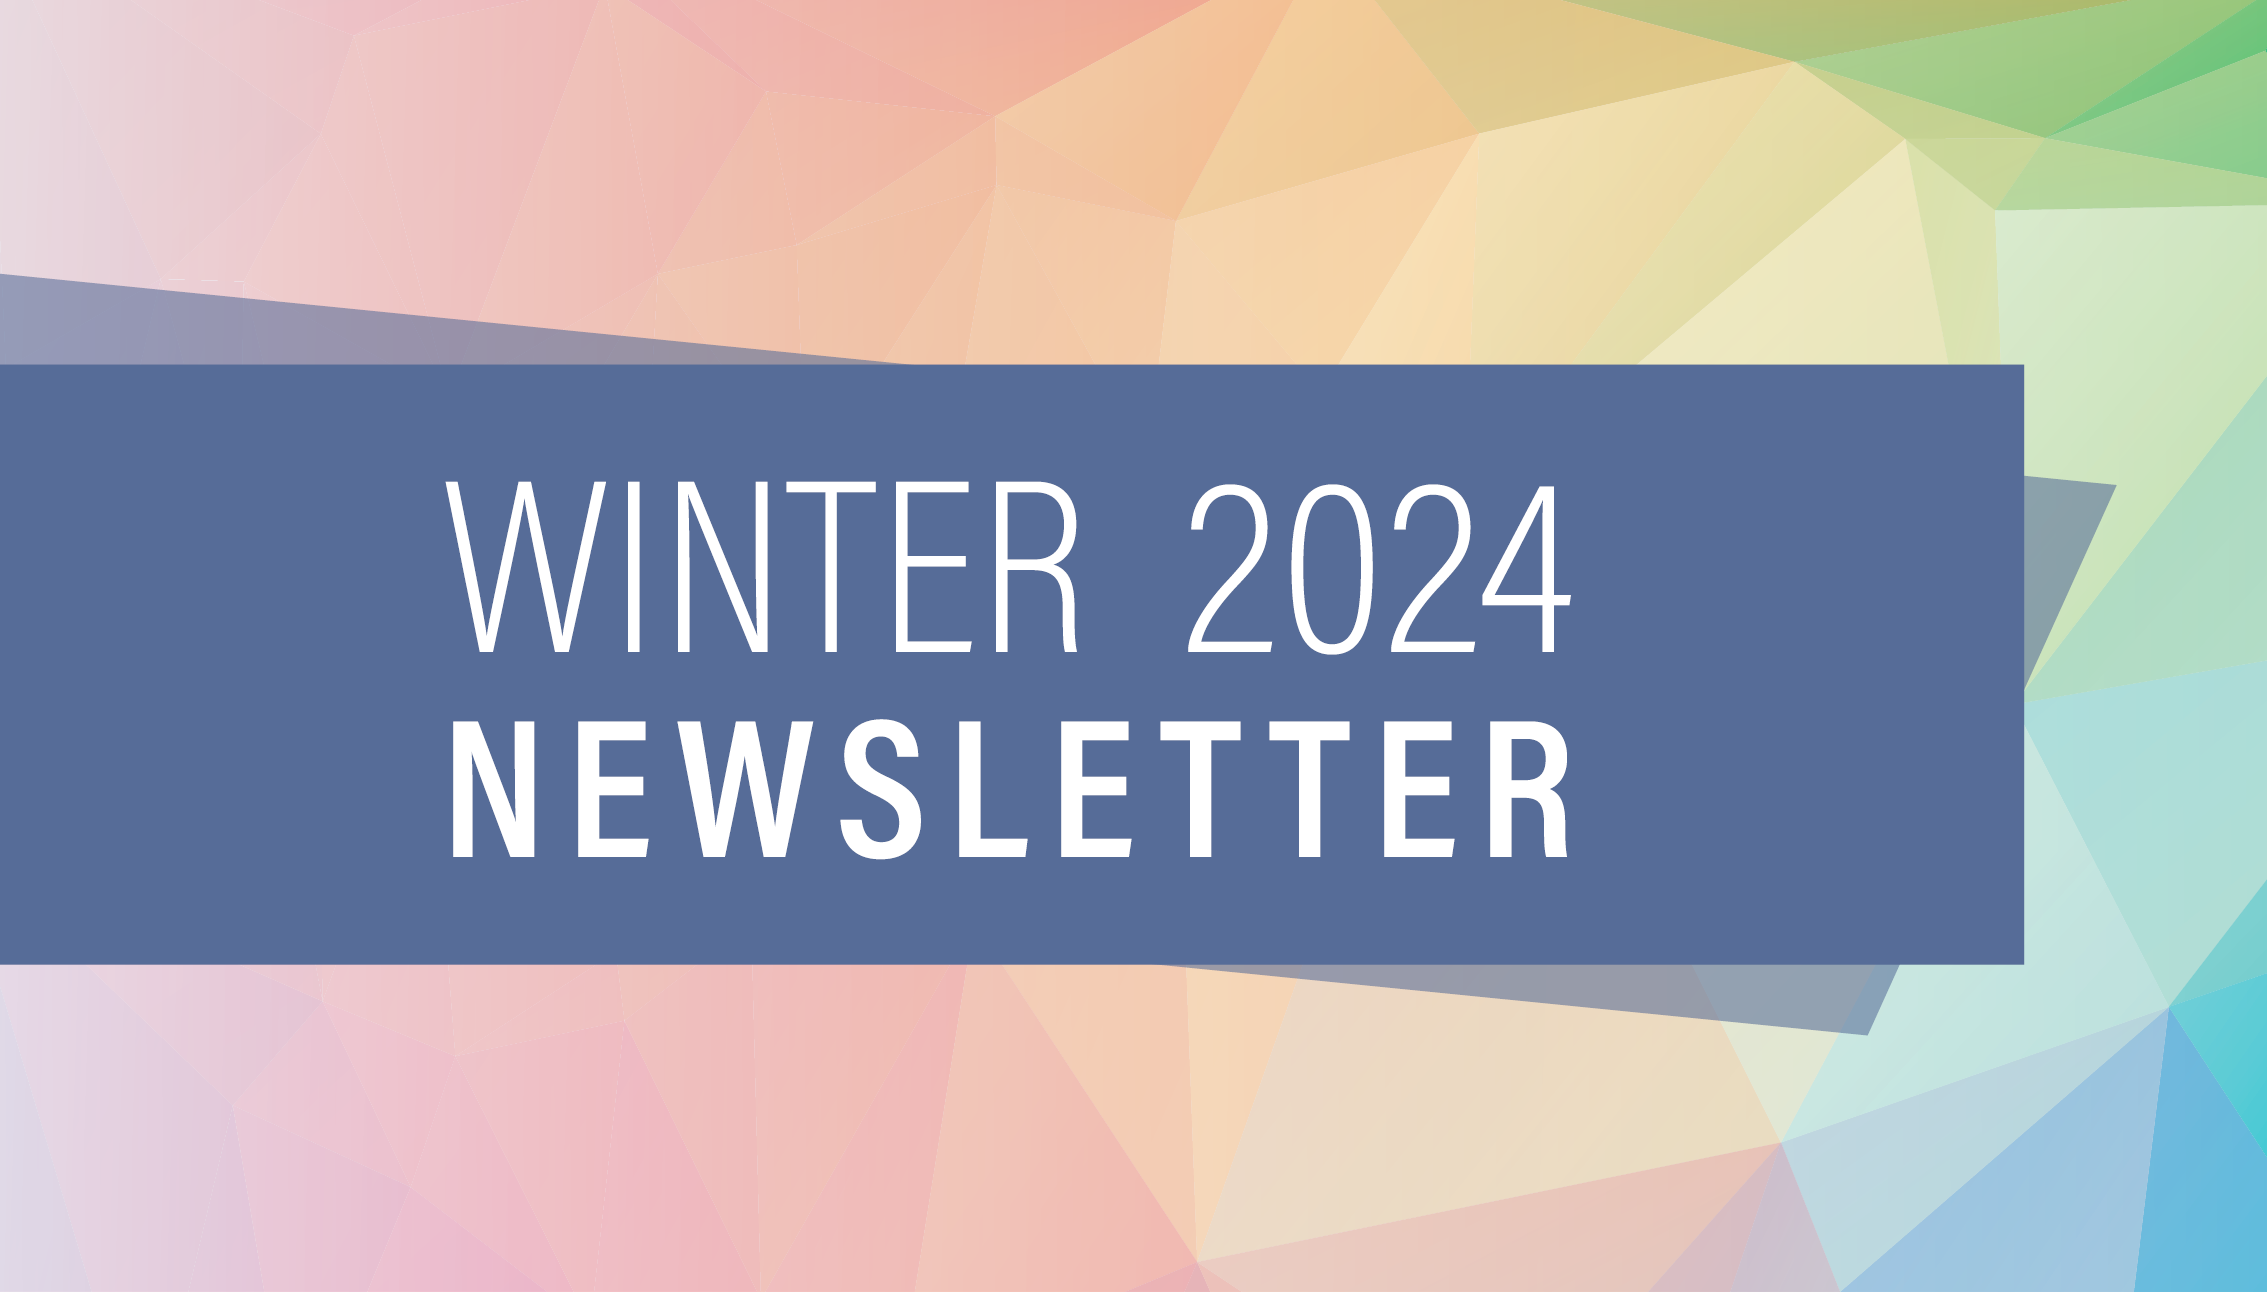 Winter 2024 Newsletter